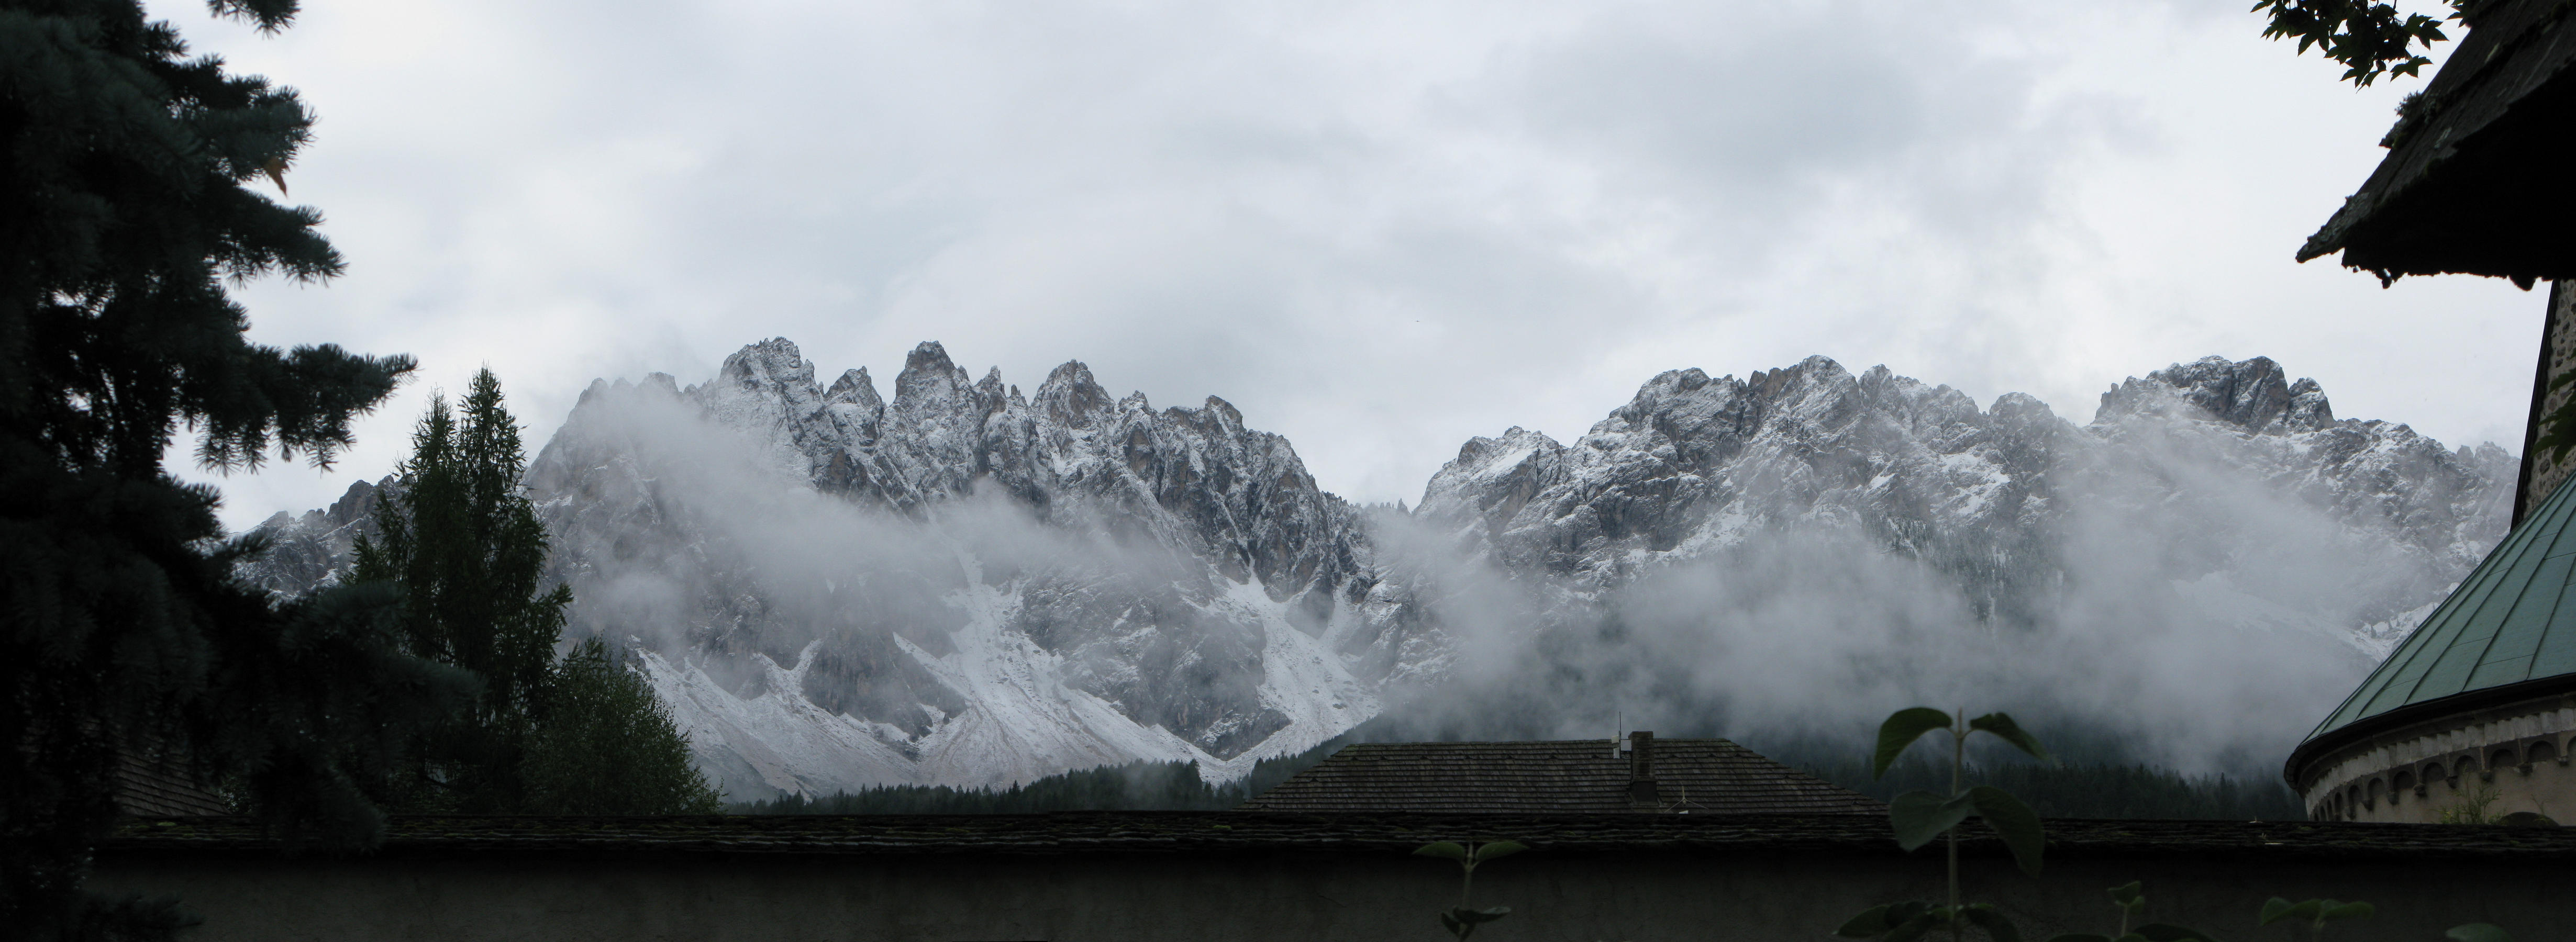 Die paar Berge der Dolomiten von San Candido aus gesehen.